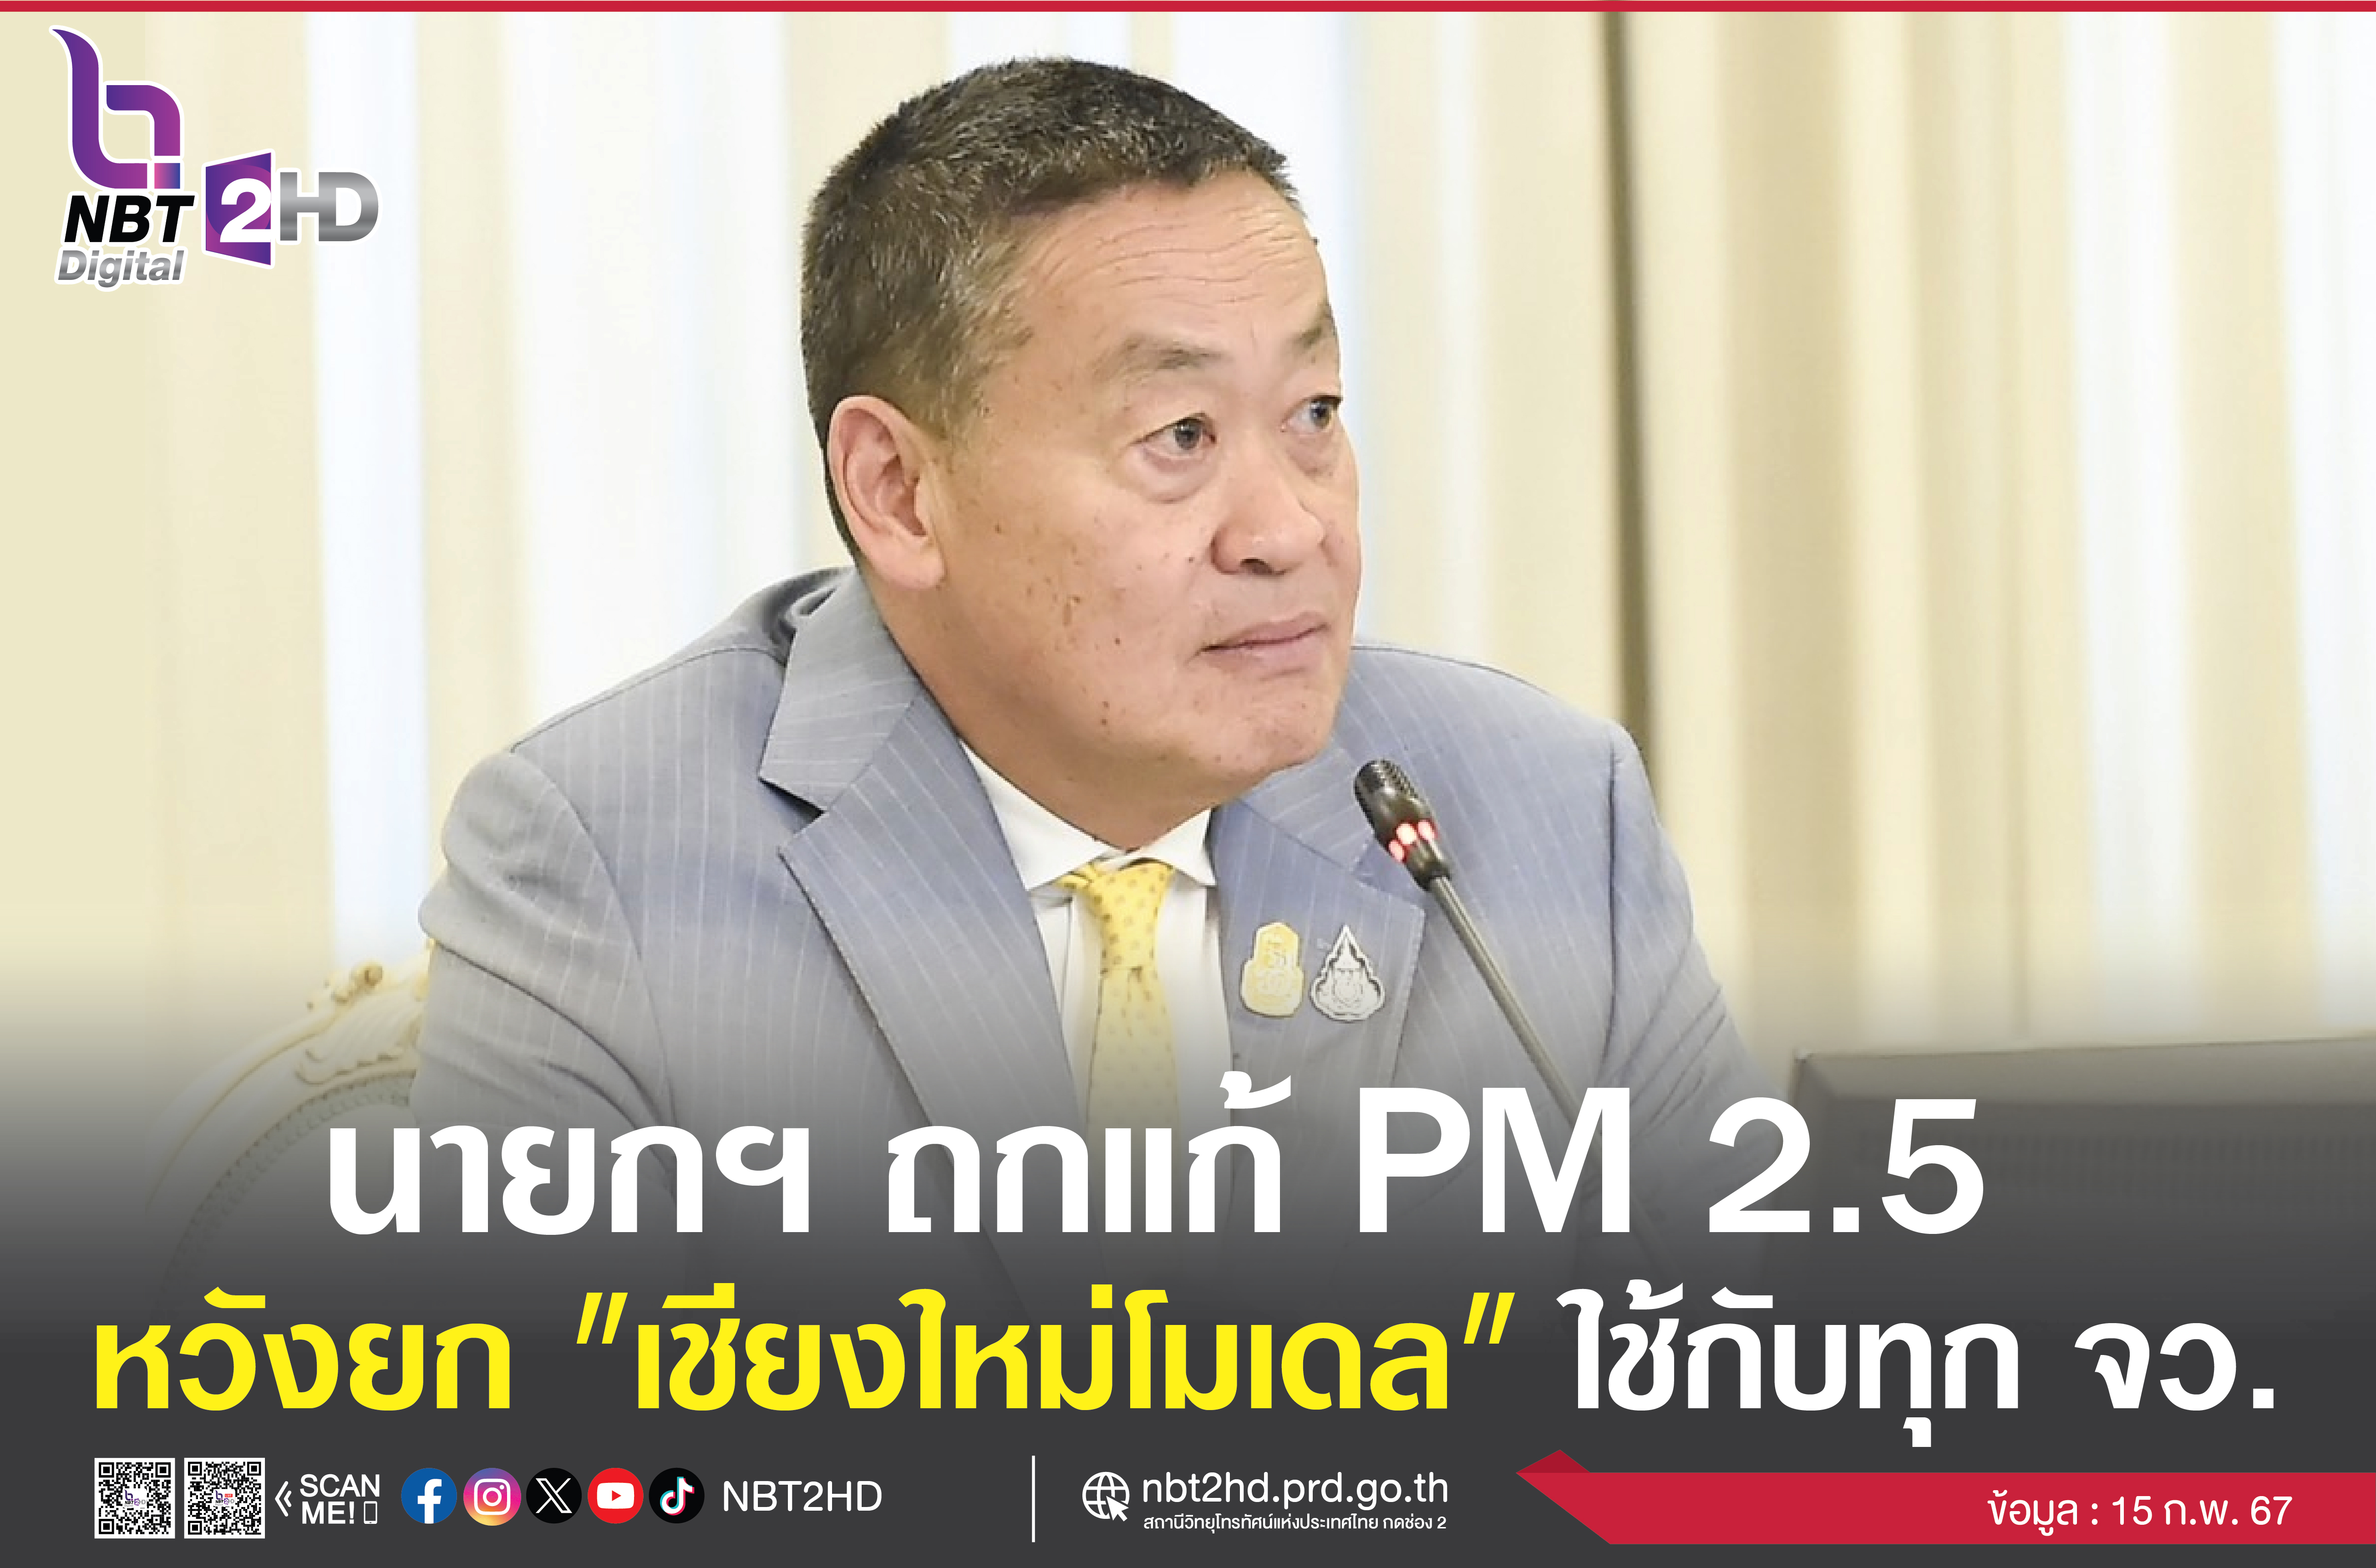 นายกรัฐมนตรี ตรวจติดตามสถานการณ์ค่าฝุ่น PM 2.5 หวังนำเชียงใหม่เป็นจังหวัดต้นแบบ (เชียงใหม่ Model) ไปใช้กับทุกๆ จังหวัด เพื่อแก้ไขปัญหาฝุ่น PM 2.5